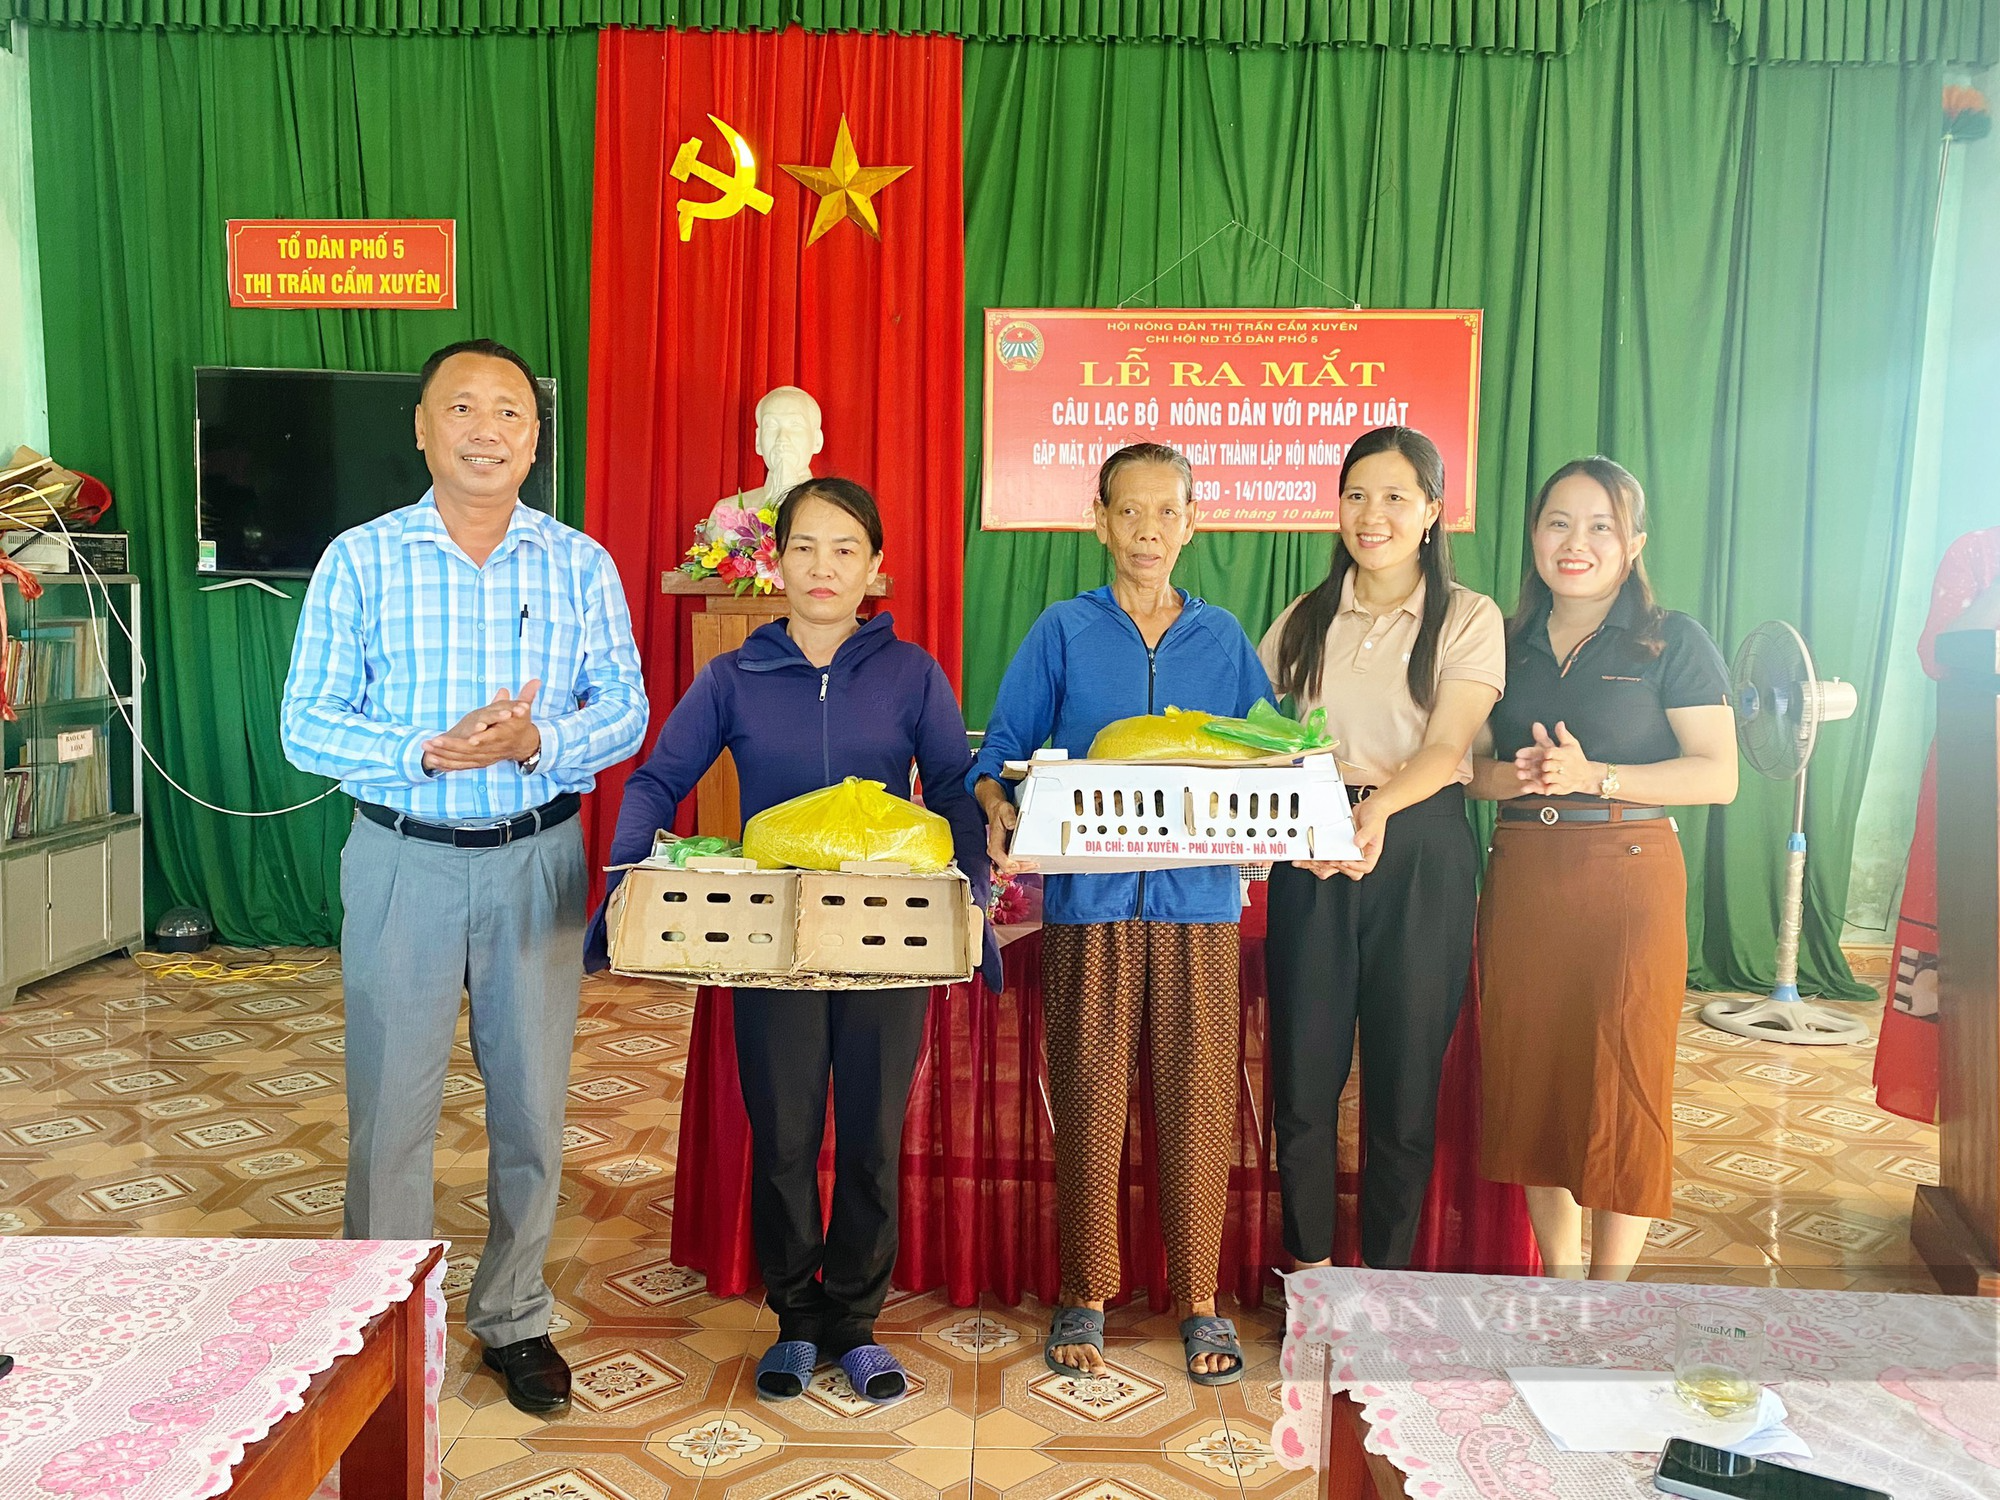 Nông dân Hà Tĩnh tích cực tham gia ngày hội chuyển đổi số, CLB nông dân với pháp luật và tổ hội nghề nghiệp - Ảnh 11.